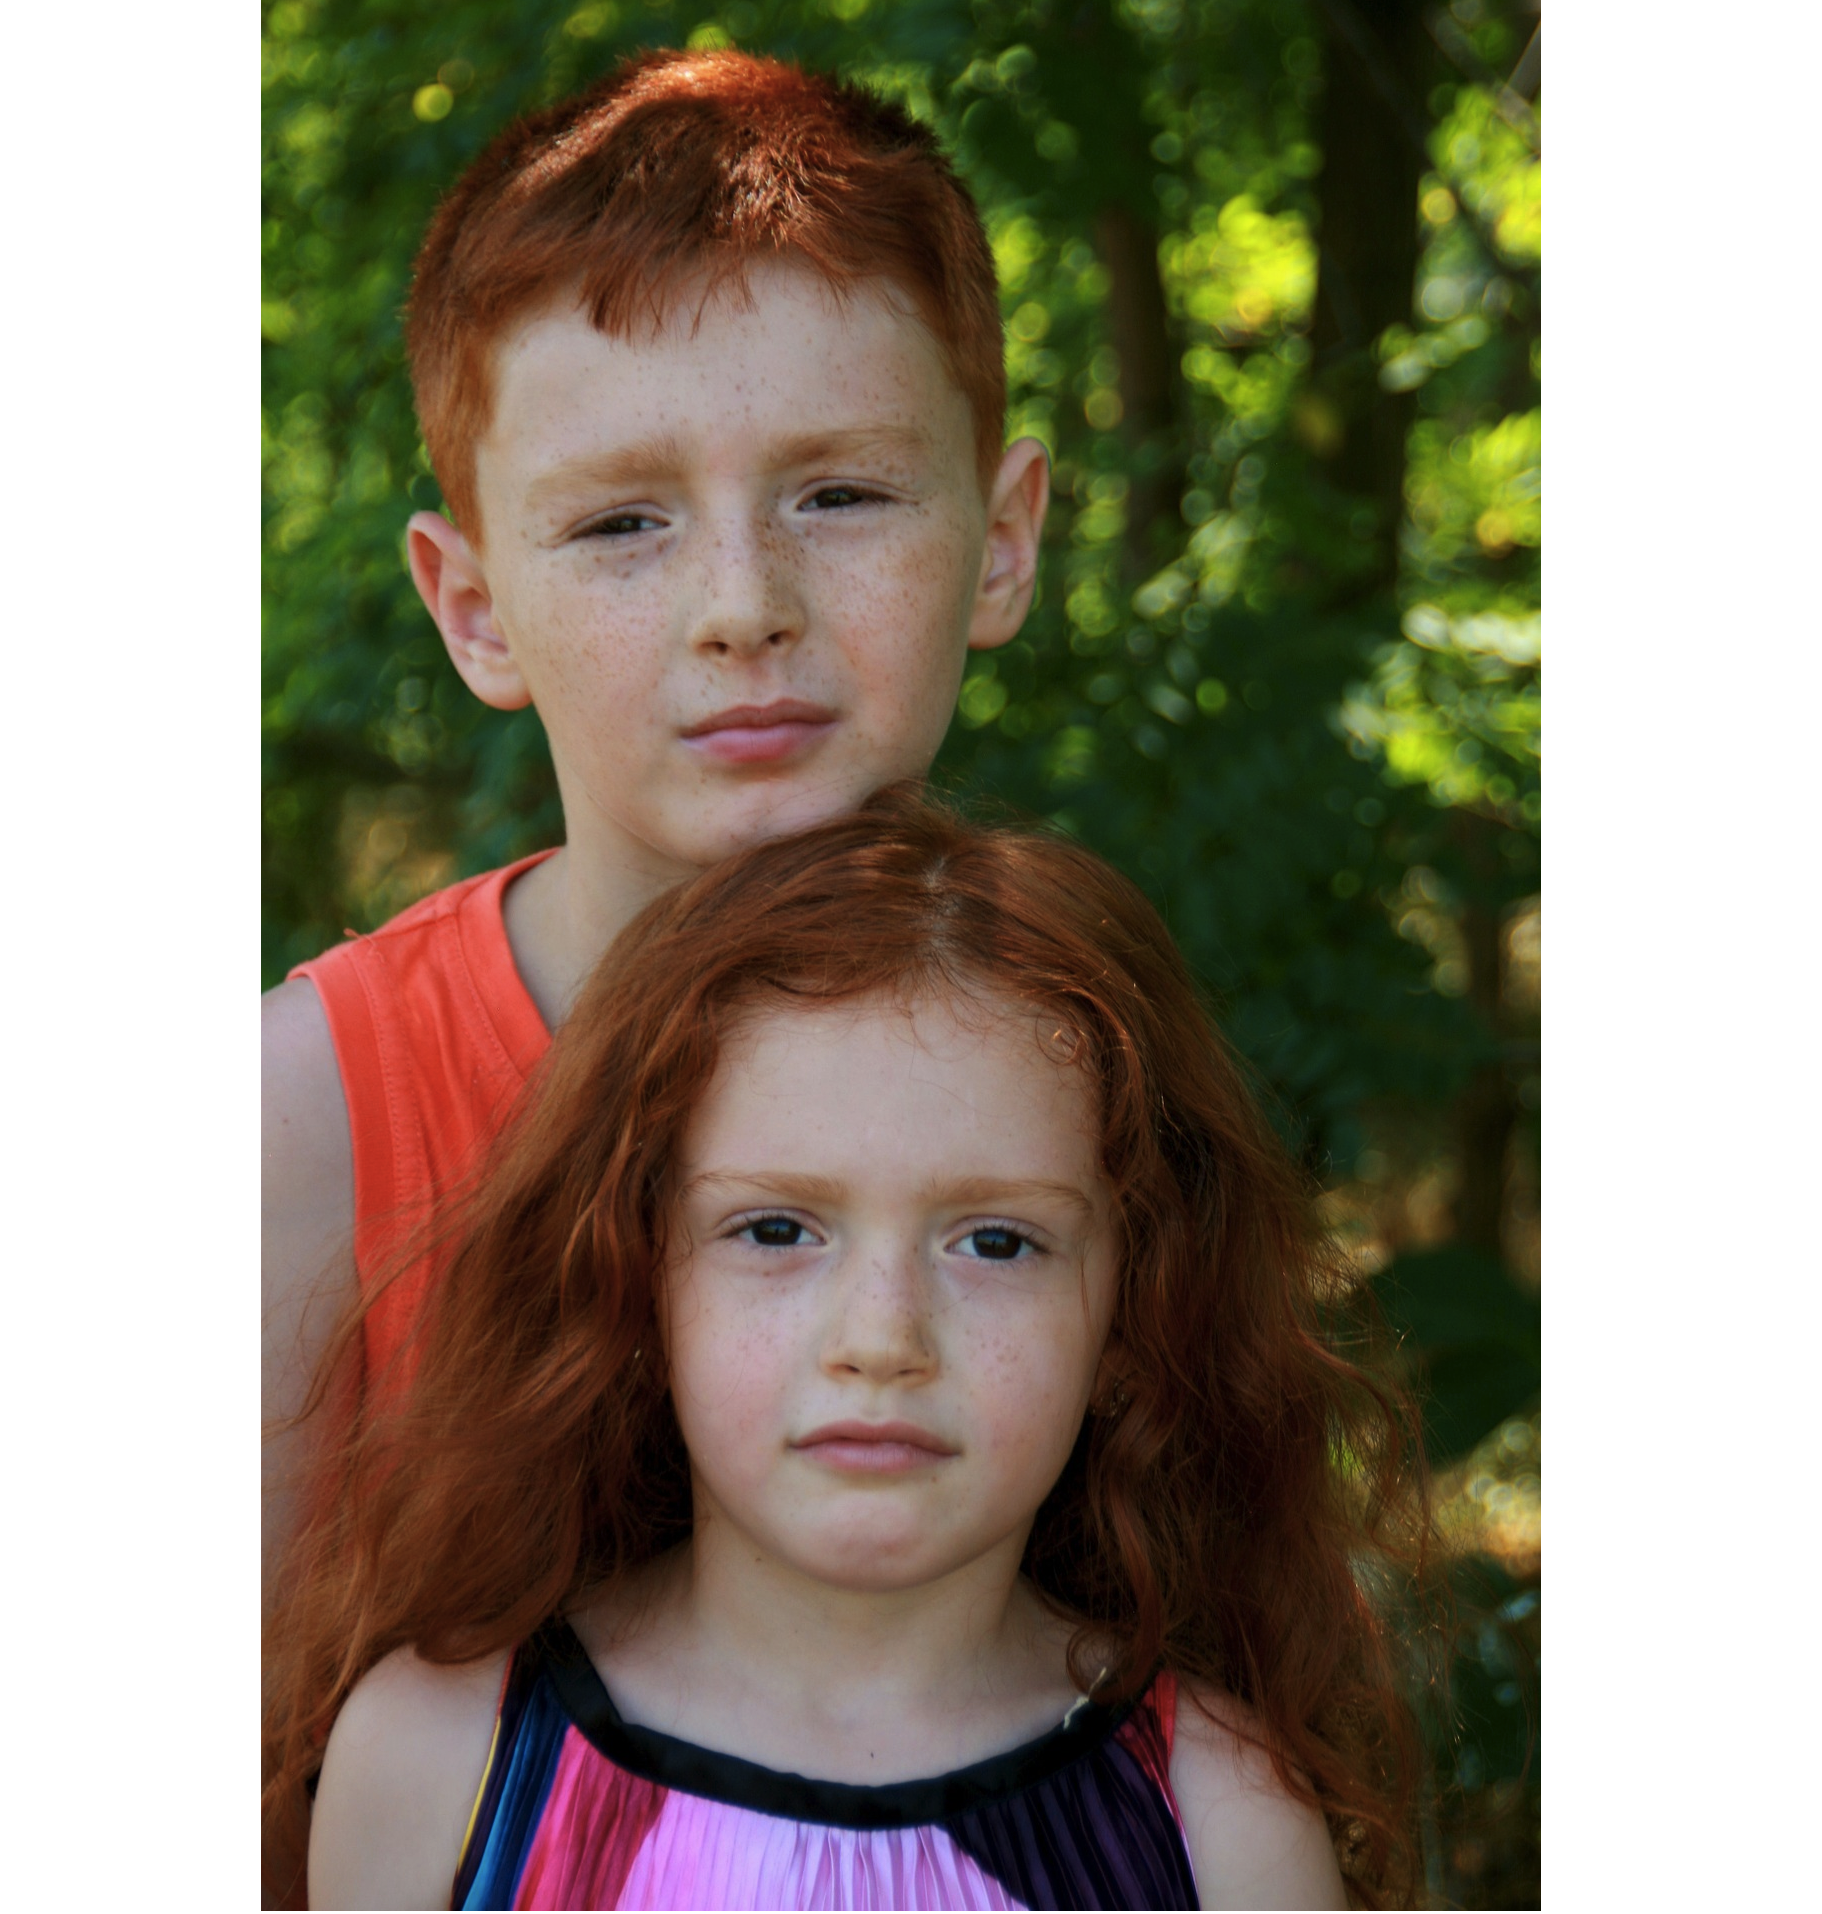 Imagen de un hermano y una hermana que ambos tienen el pelo rojizo distintivo.